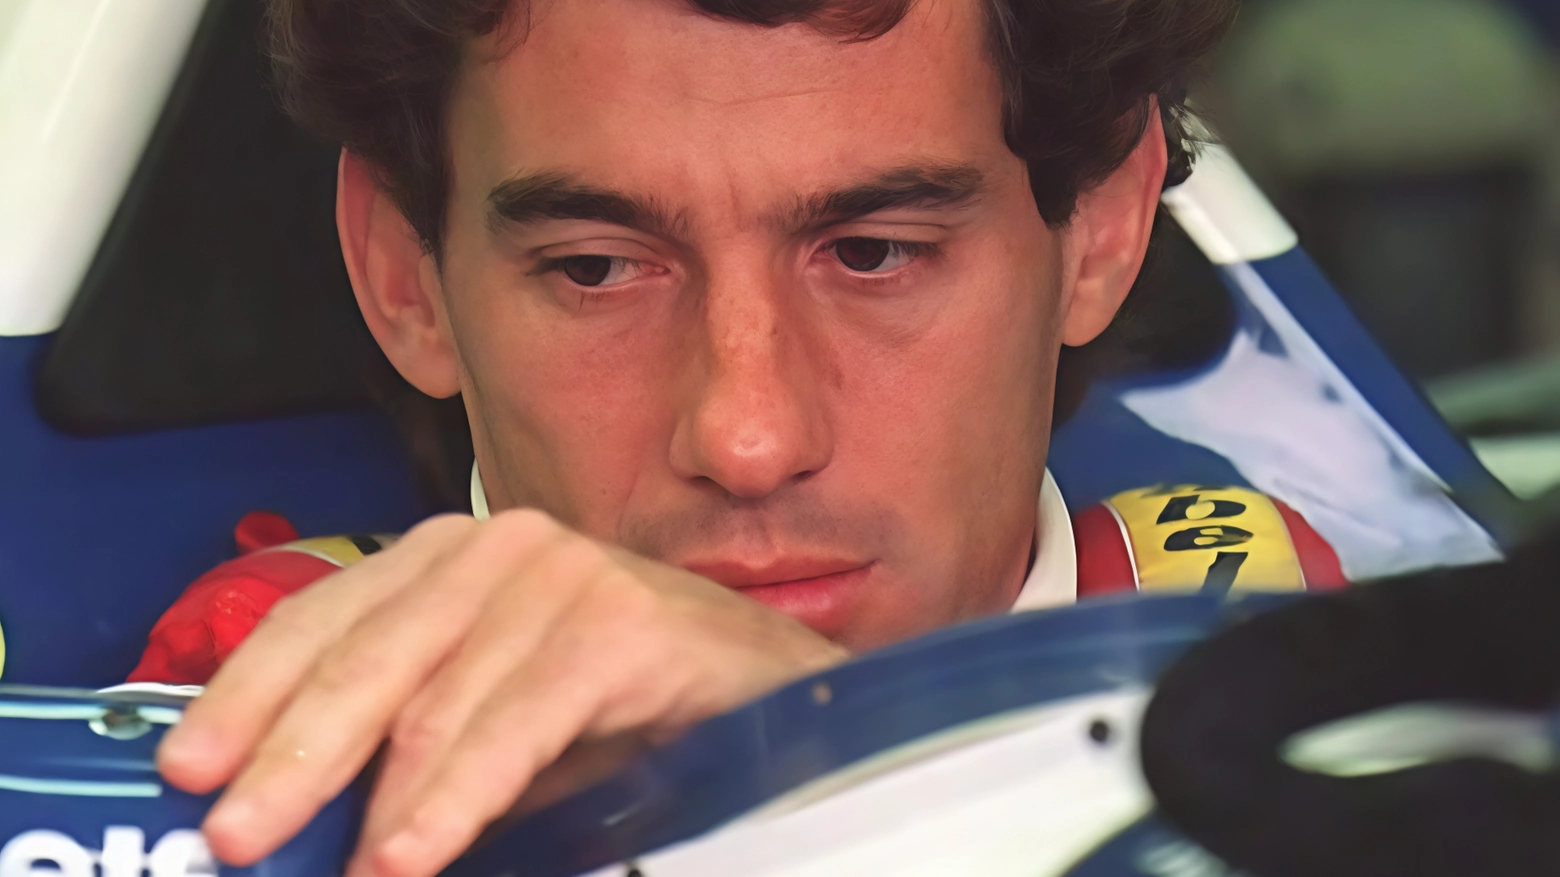 In ricordo di Senna